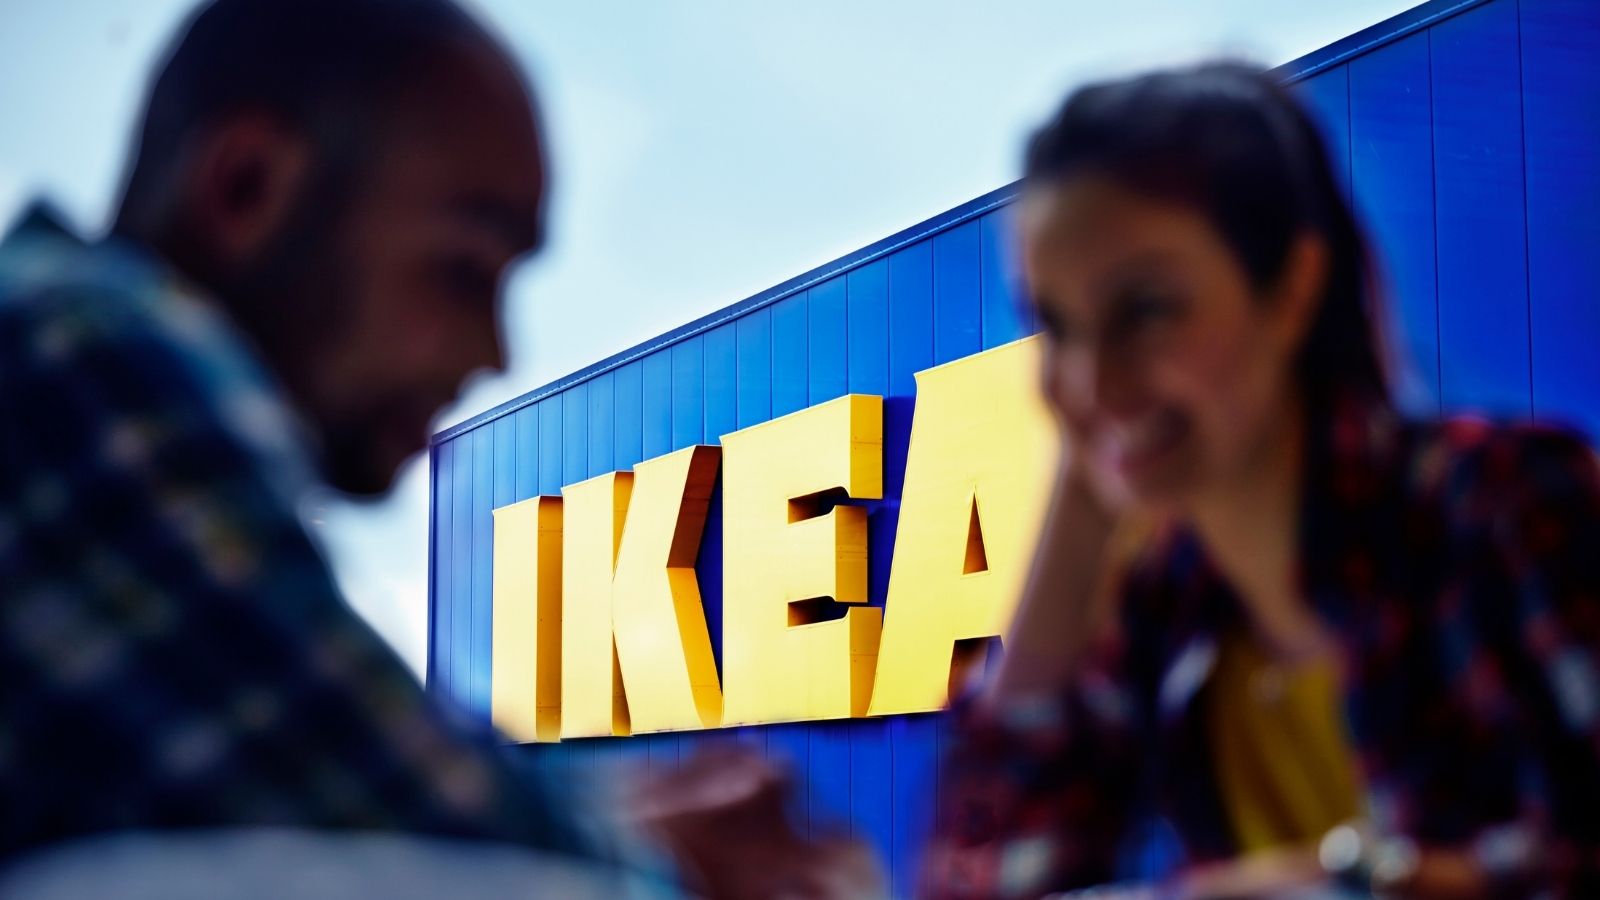 IKEA rozstrzygnęła przetarg! IKEA mediarun ikea przetarg